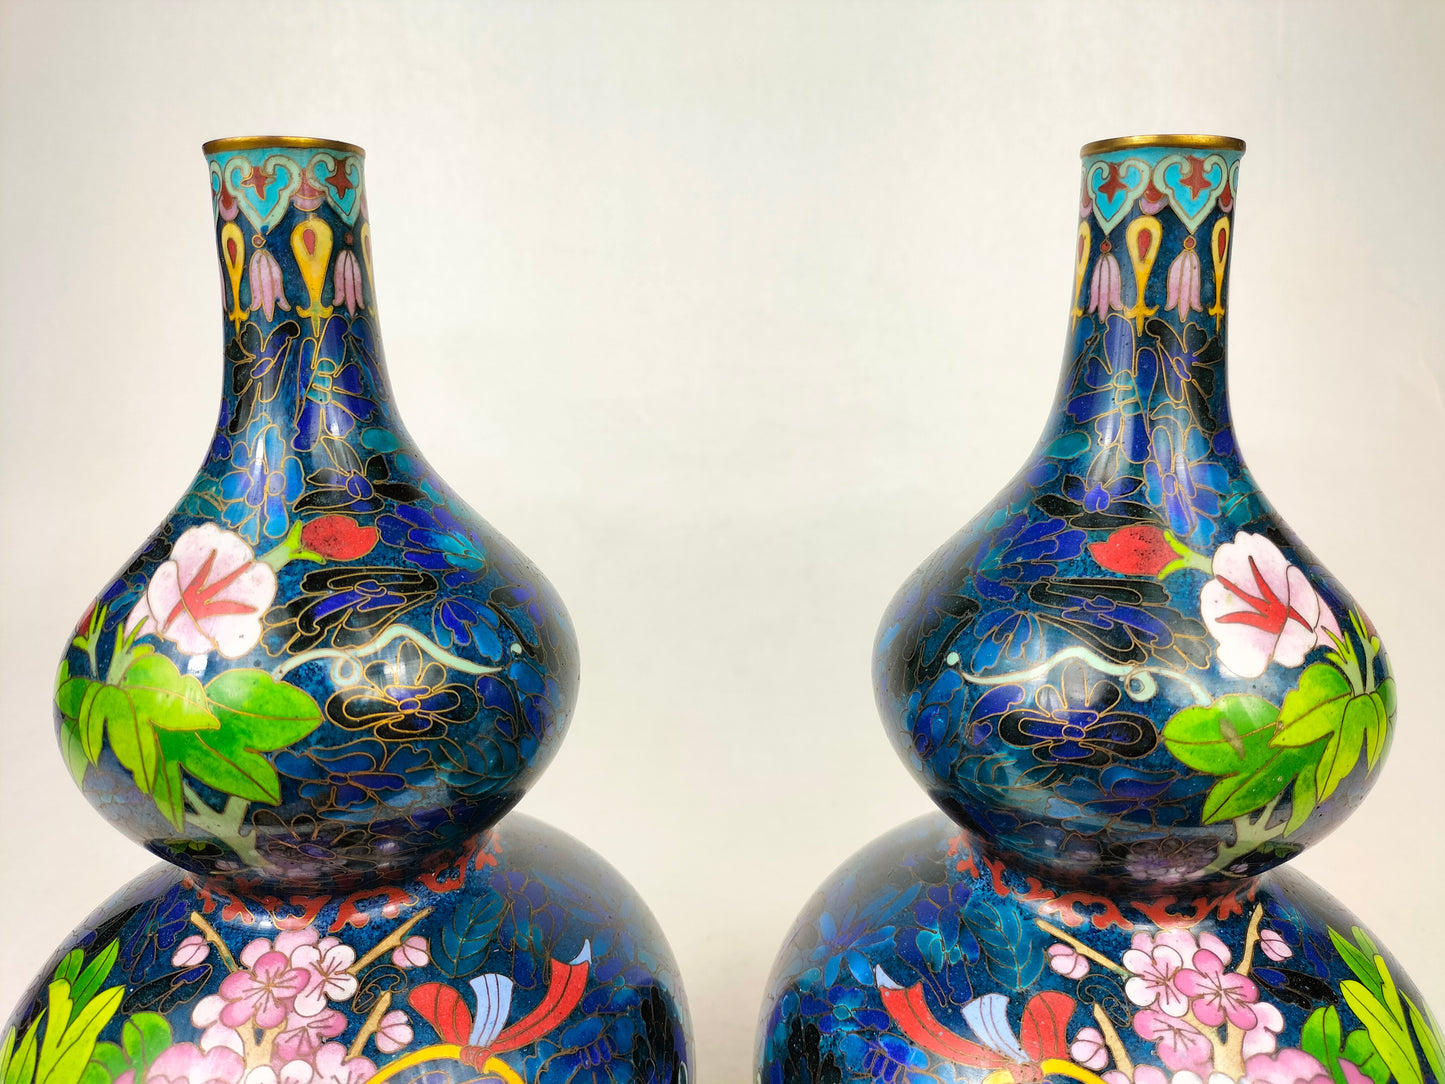 Cặp bình hoa hình bầu đôi của Trung Quốc được trang trí bằng giỏ hoa // thế kỷ 20